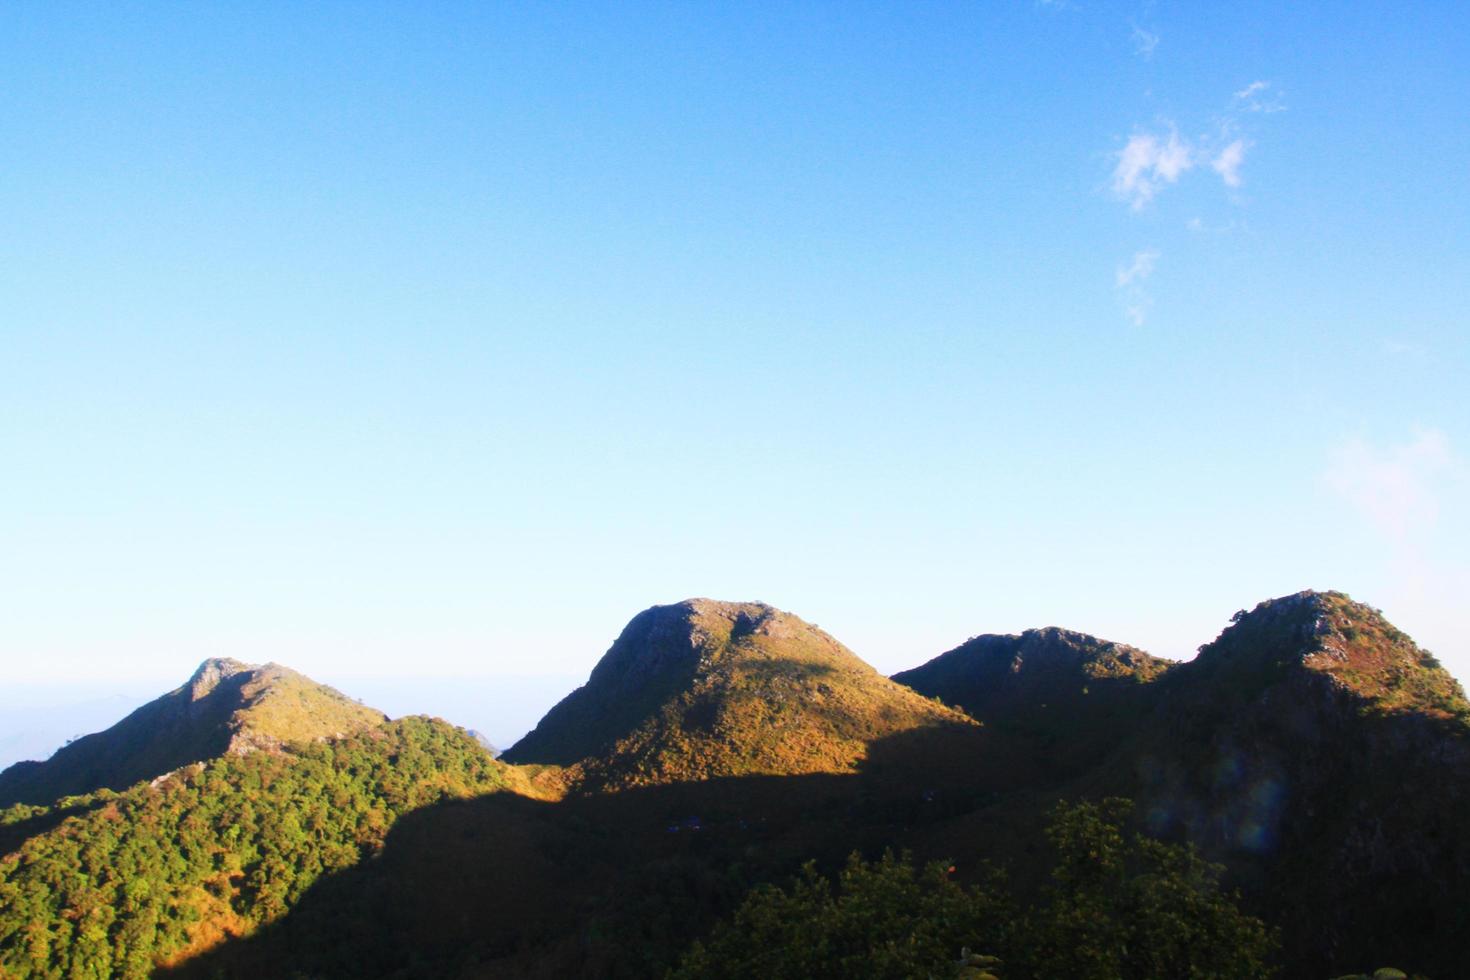 schön Gras Blumen Landschaft von felsig Kalkstein Berg und Grün Wald mit blau Himmel beim Chiang doa National Park im chiangmai, Thailand foto